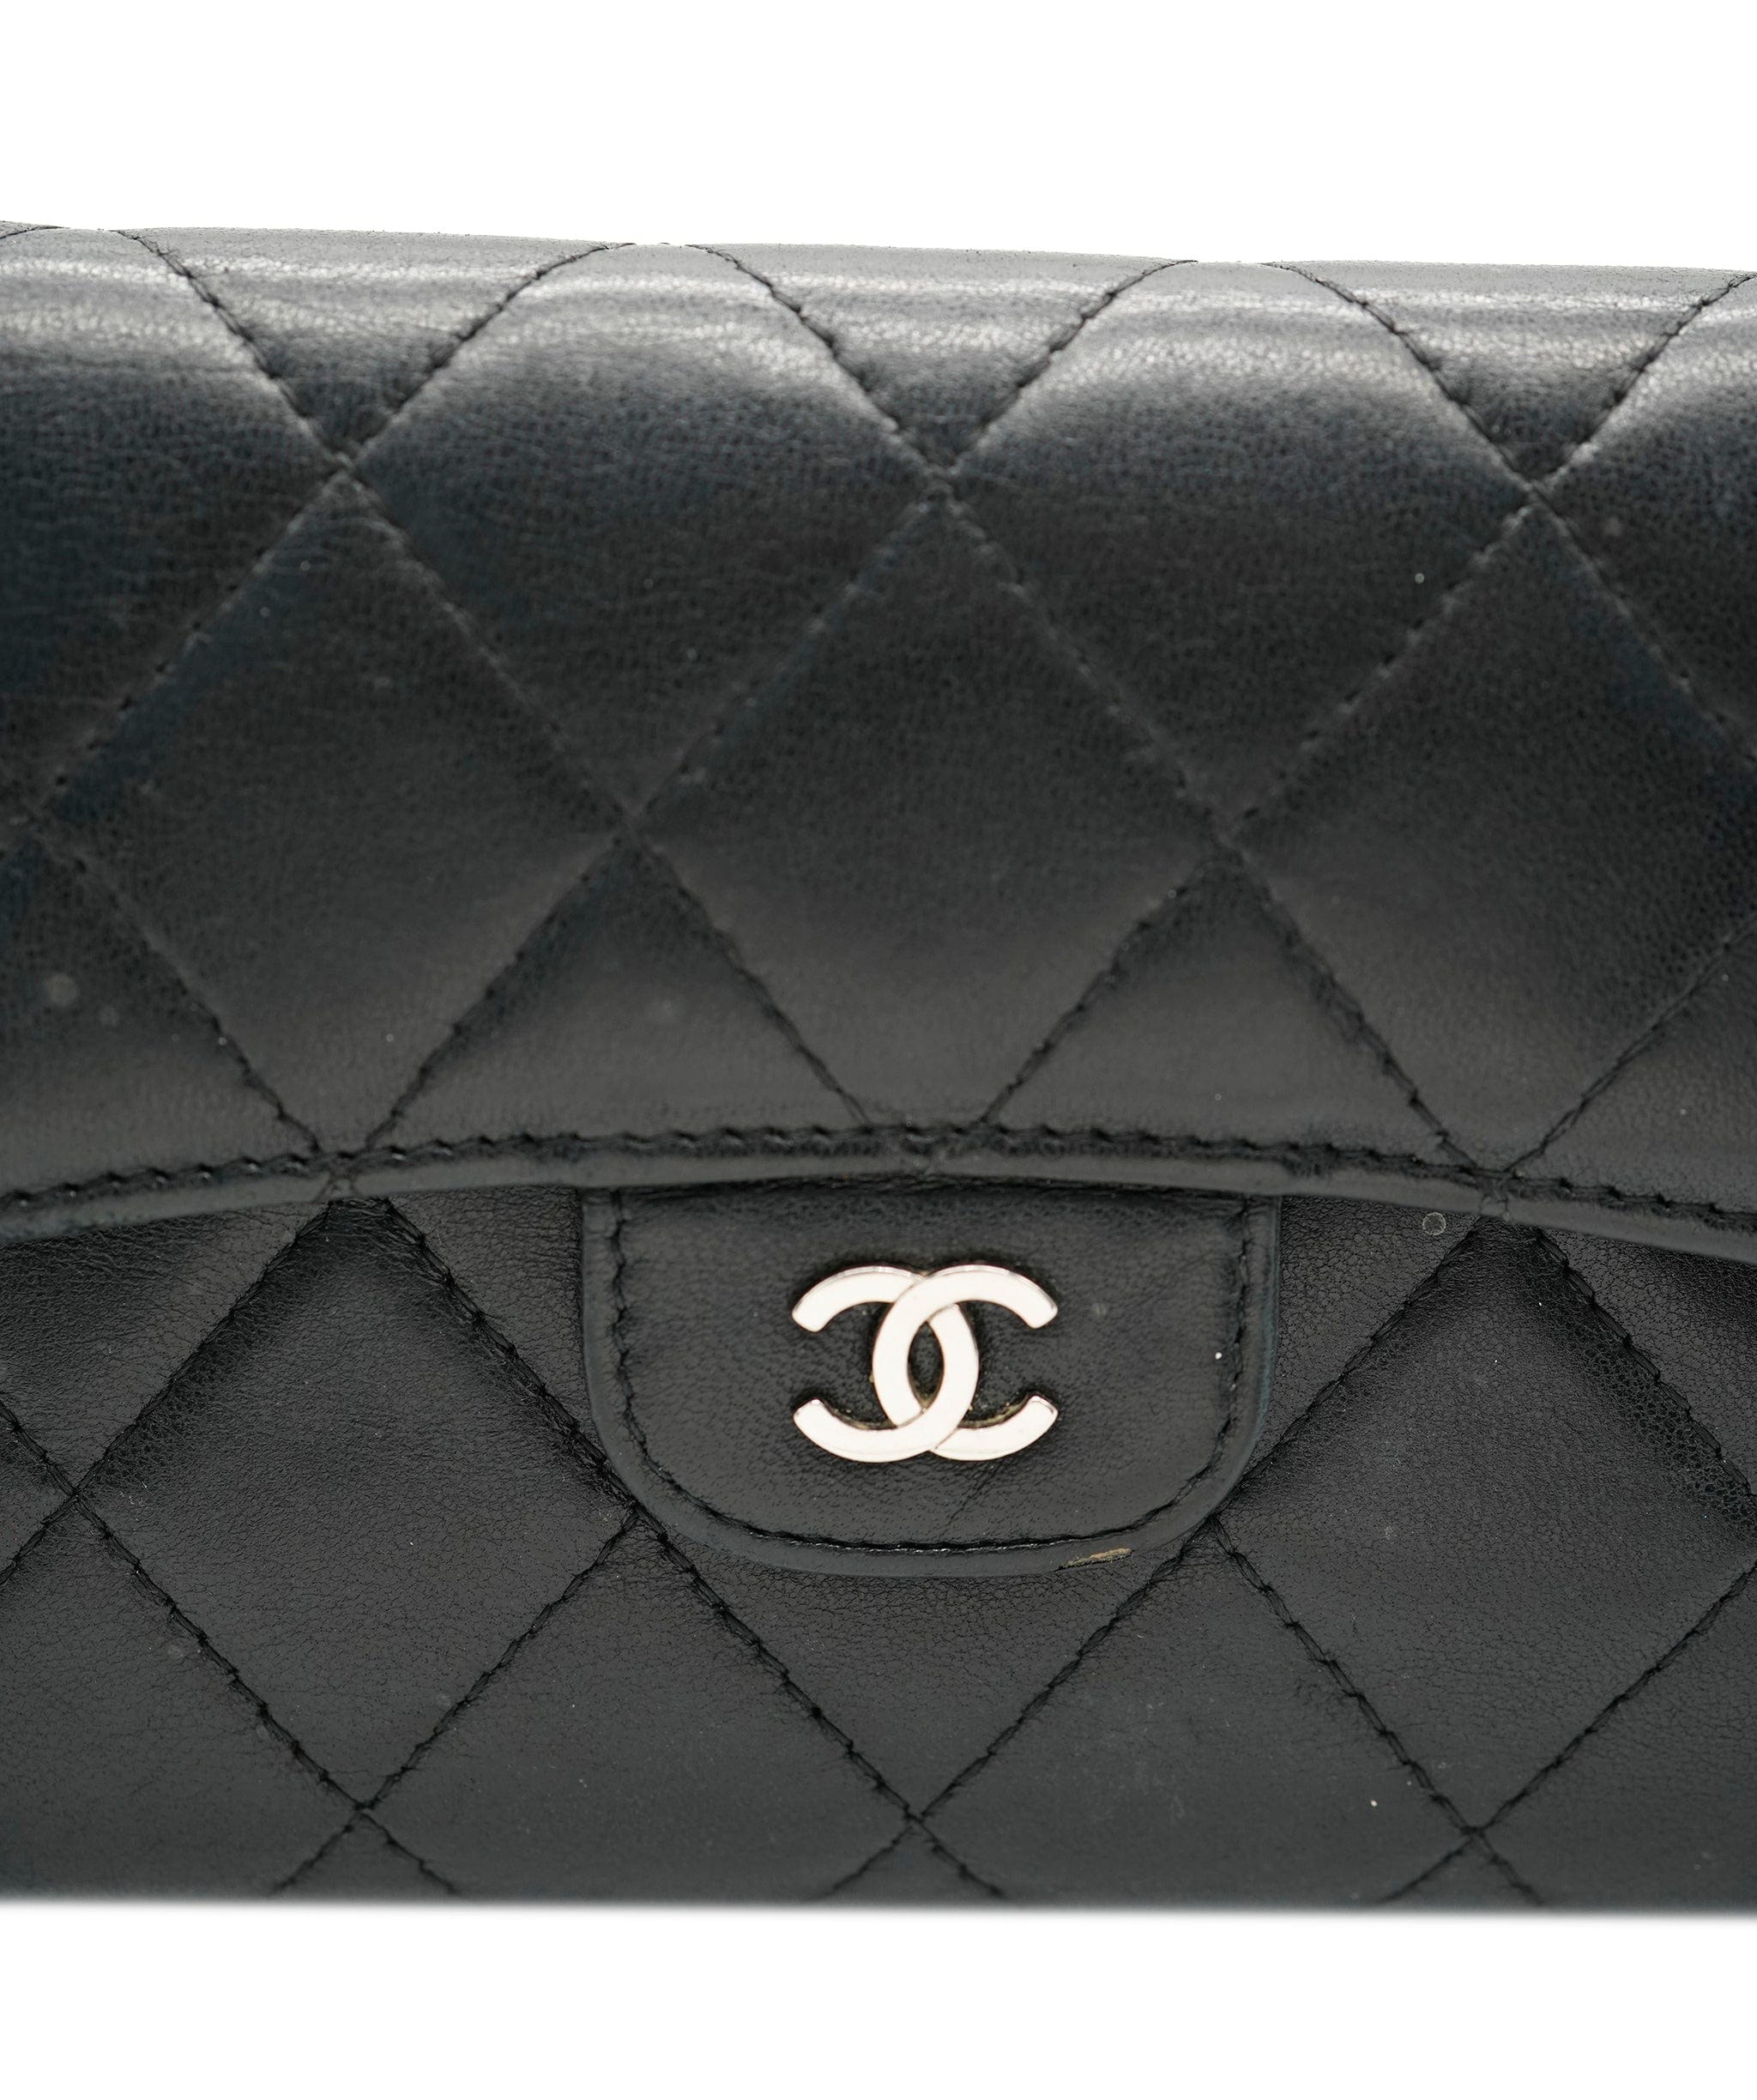 Chanel Chanel Wallet black AVC1837